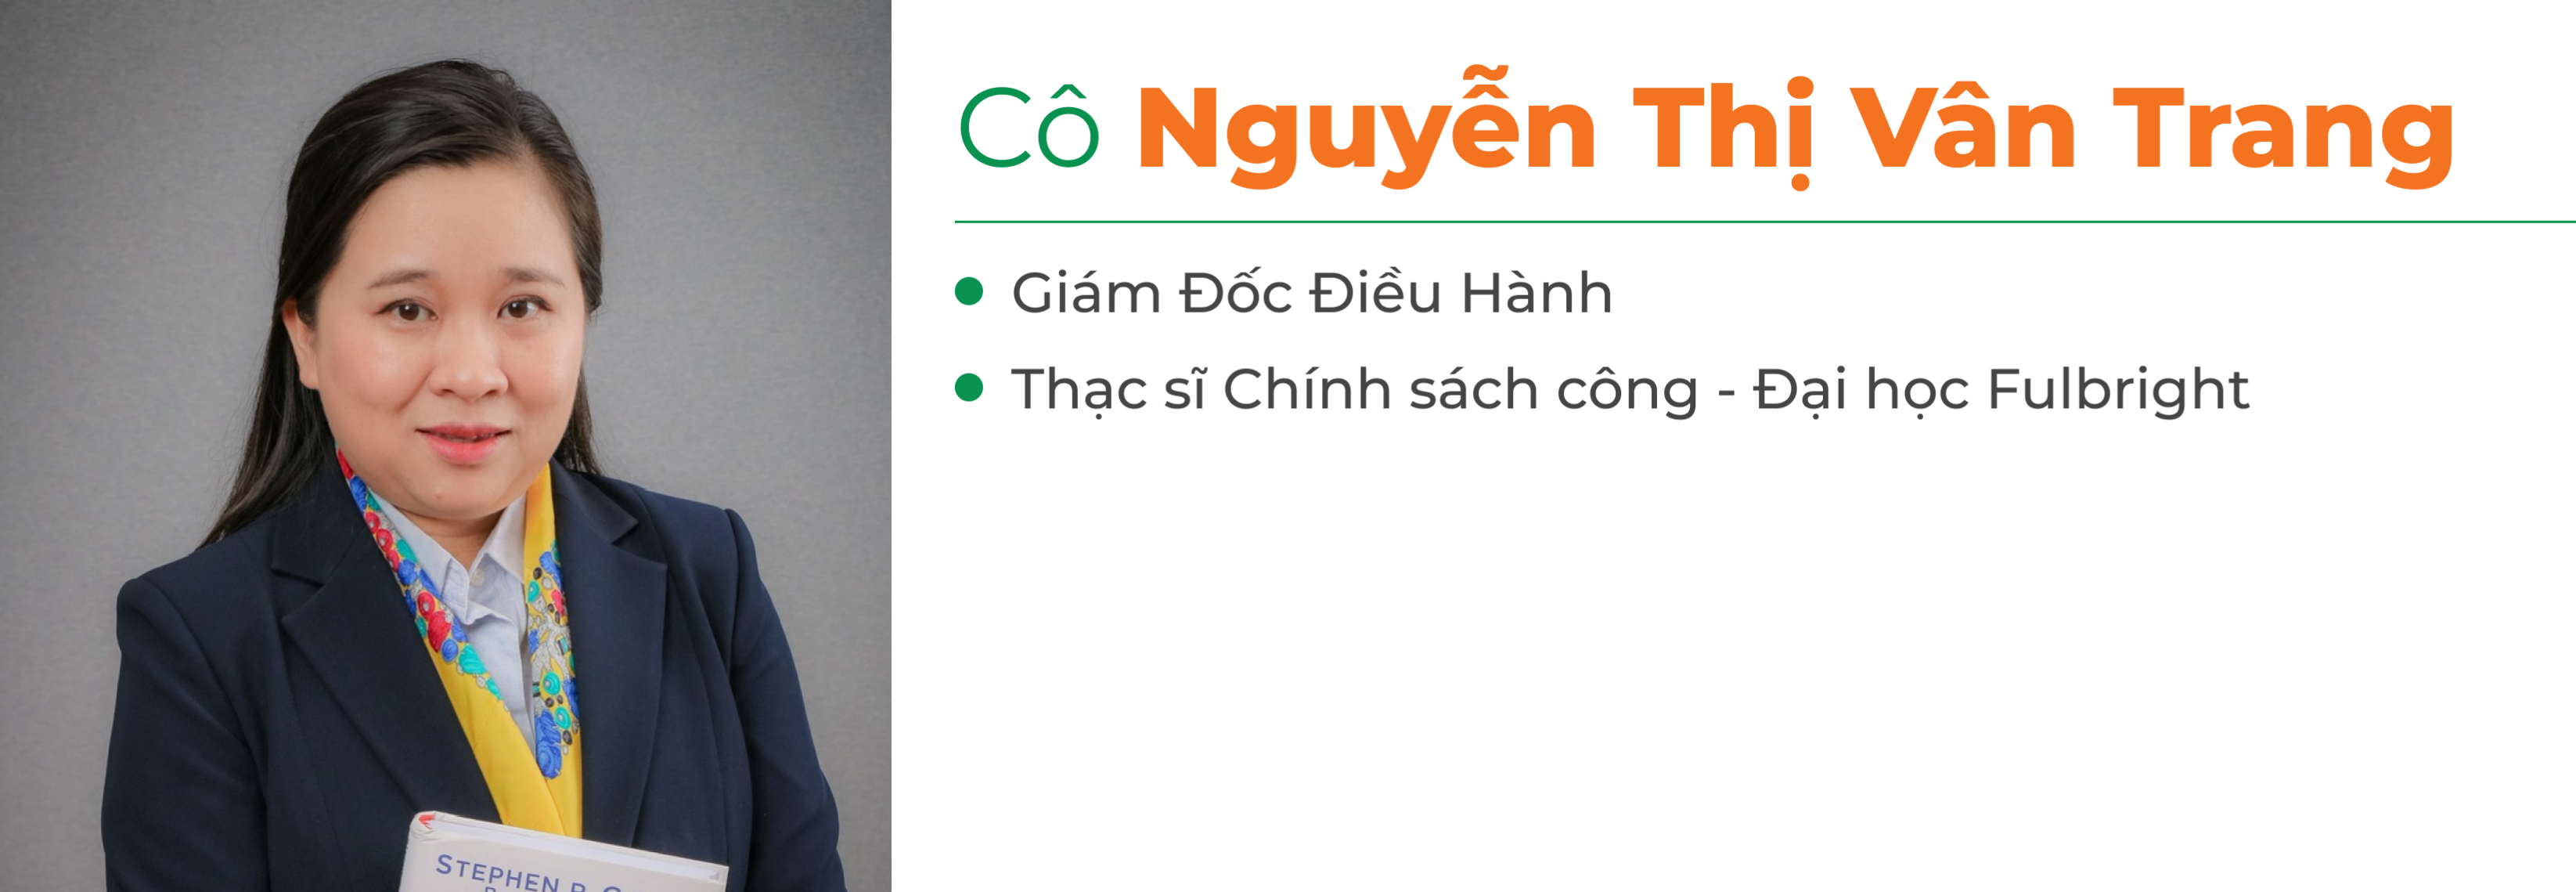 Cô Nguyễn Thị Vân Trang